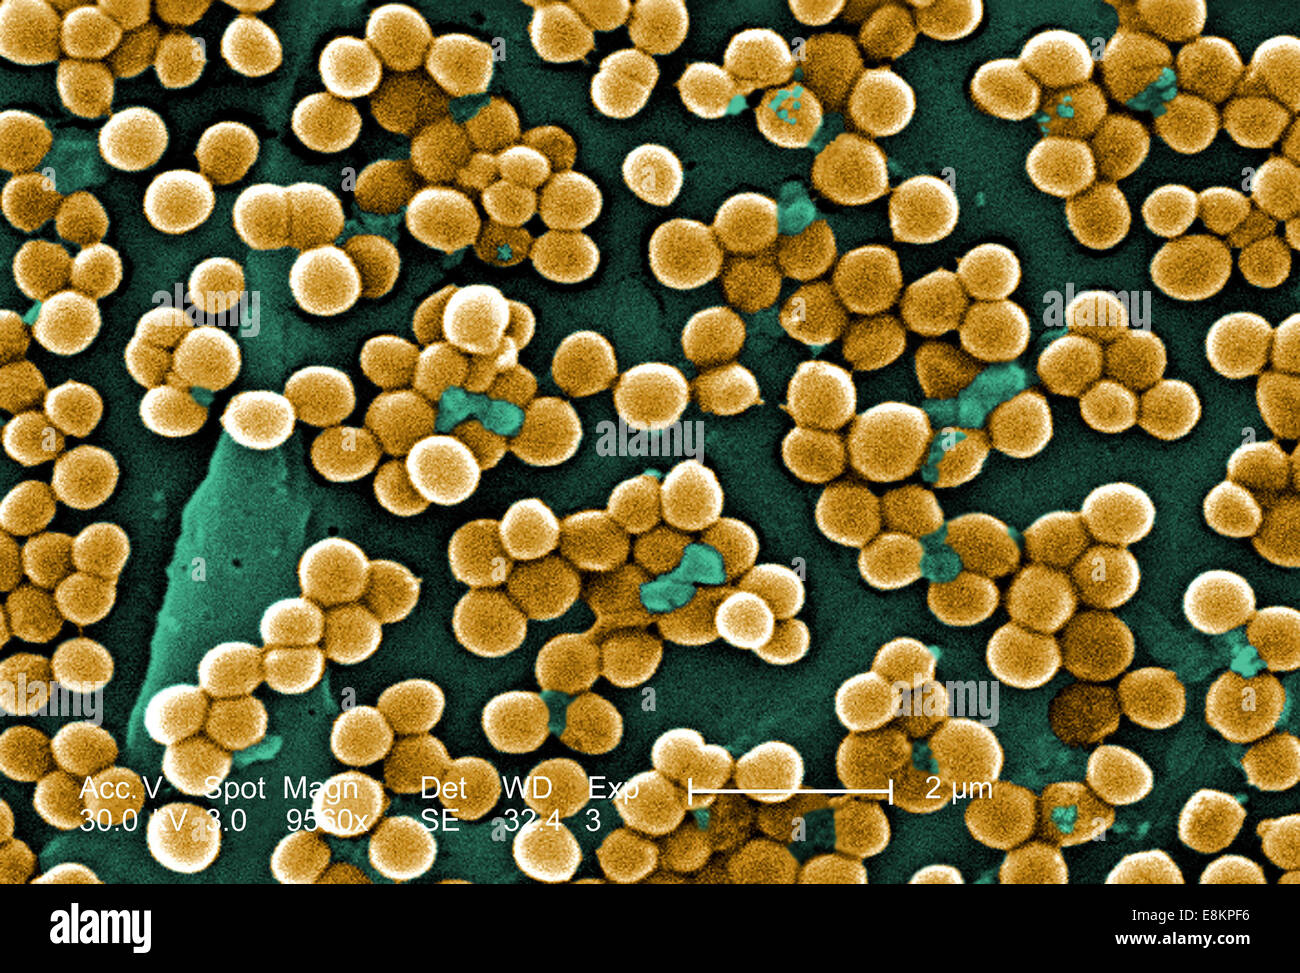 Este análisis micrografía de electrones (SEM) representada numerosas matas de Staphylococcus aureus meticilina-resistente bacterias, Foto de stock